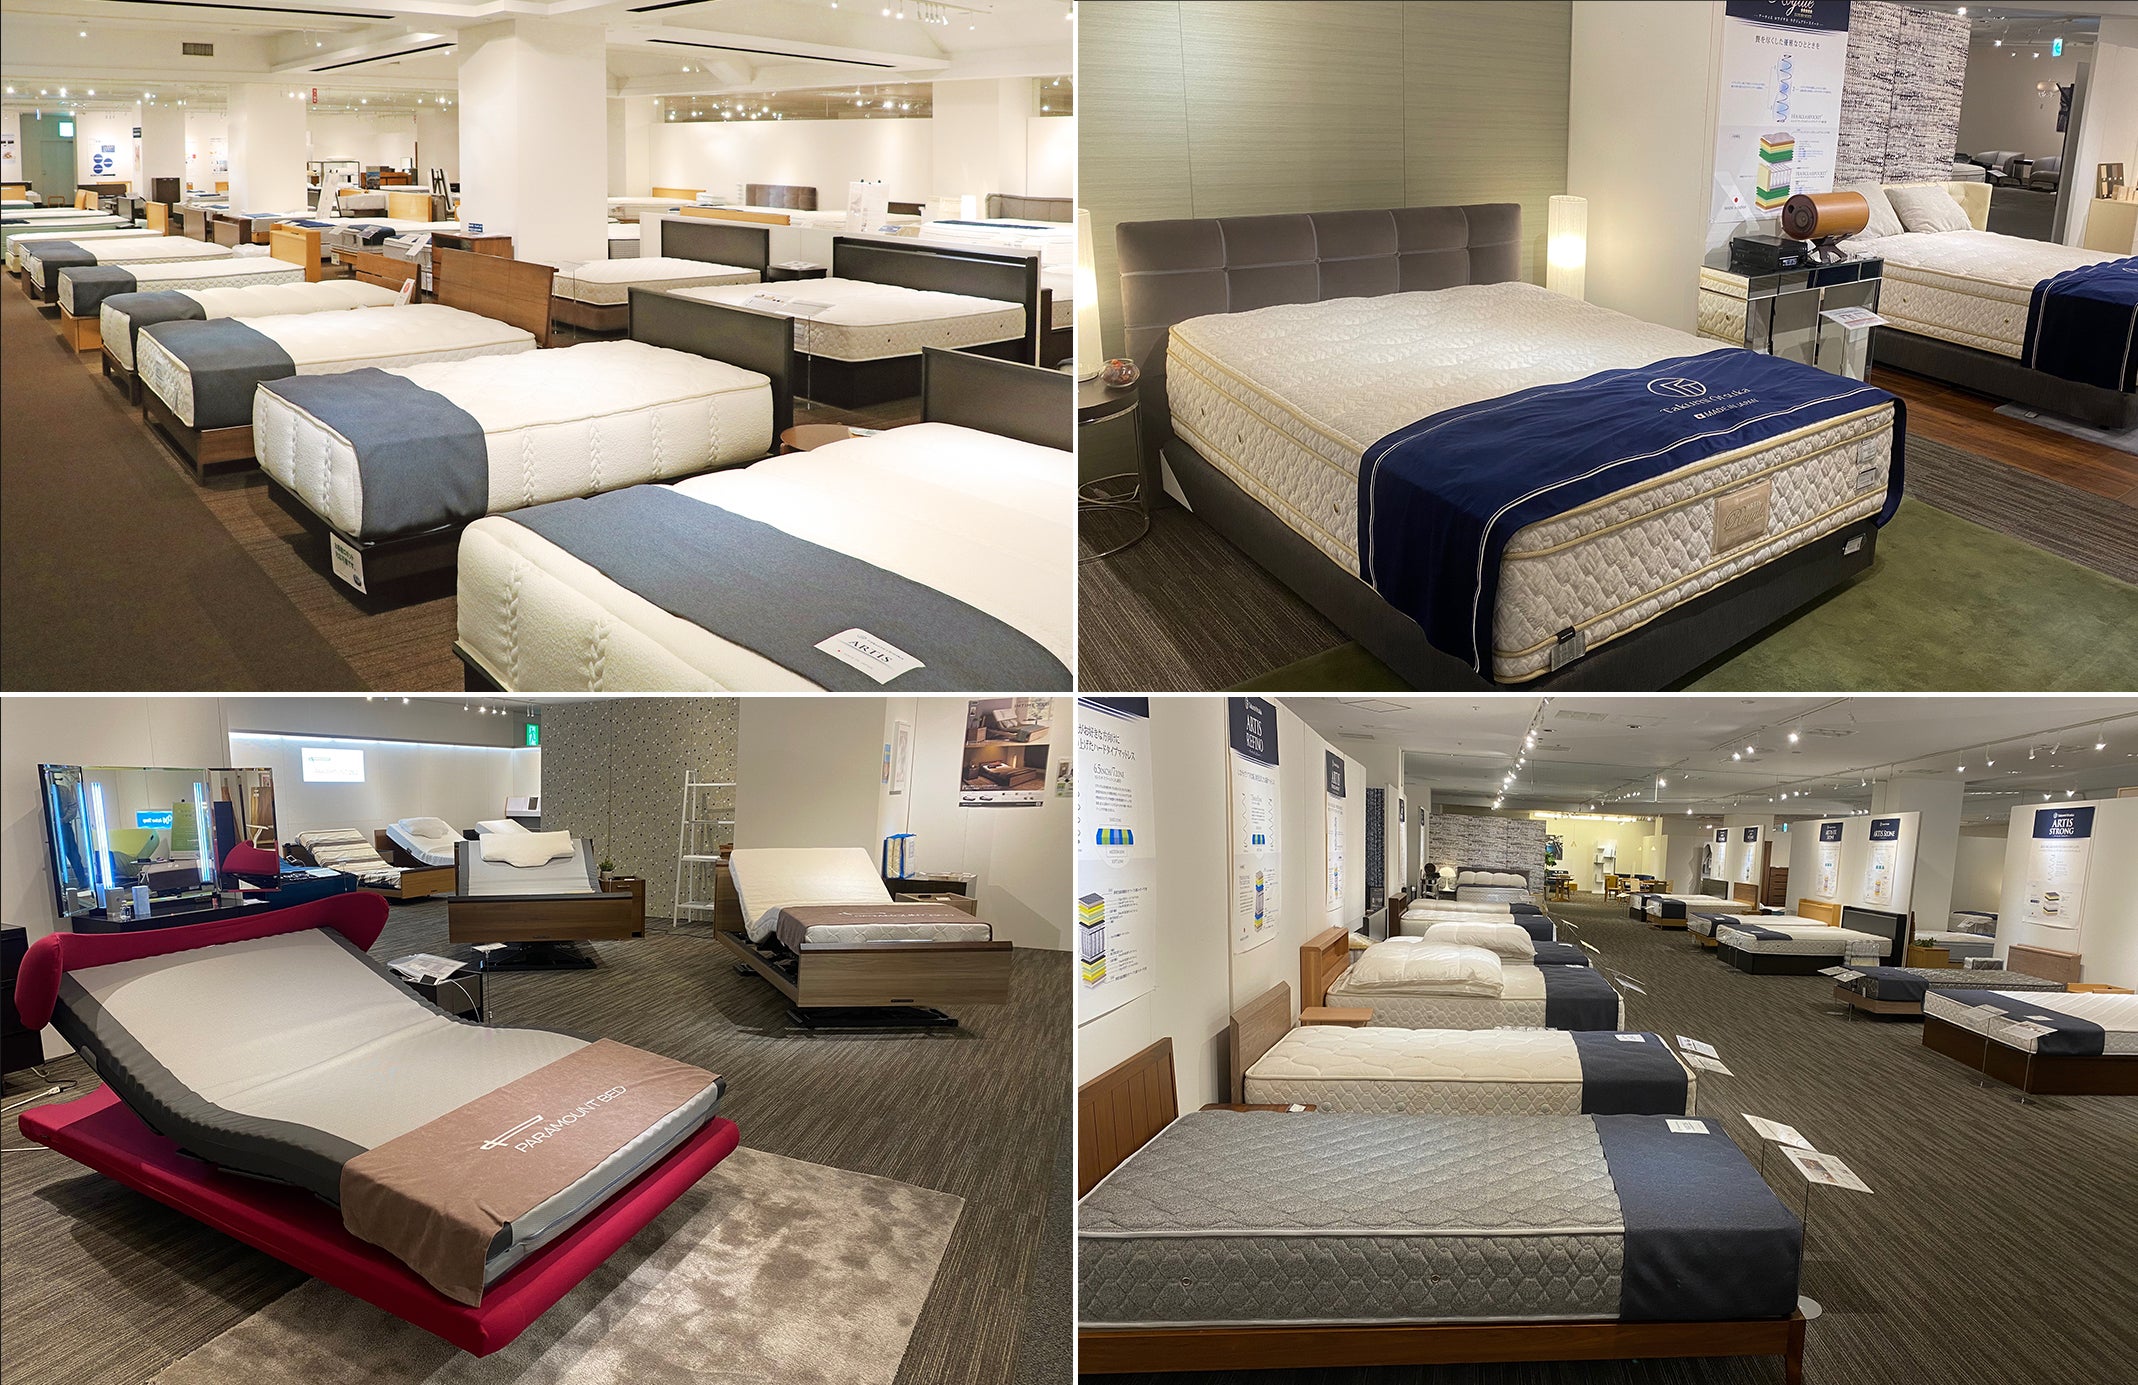 選べる・試せる寝心地40種類以上！
TVCMで人気のパラマウントベッドも関東最大級の品揃えで、
いろいろなモデルを実際にお試しいただけます！